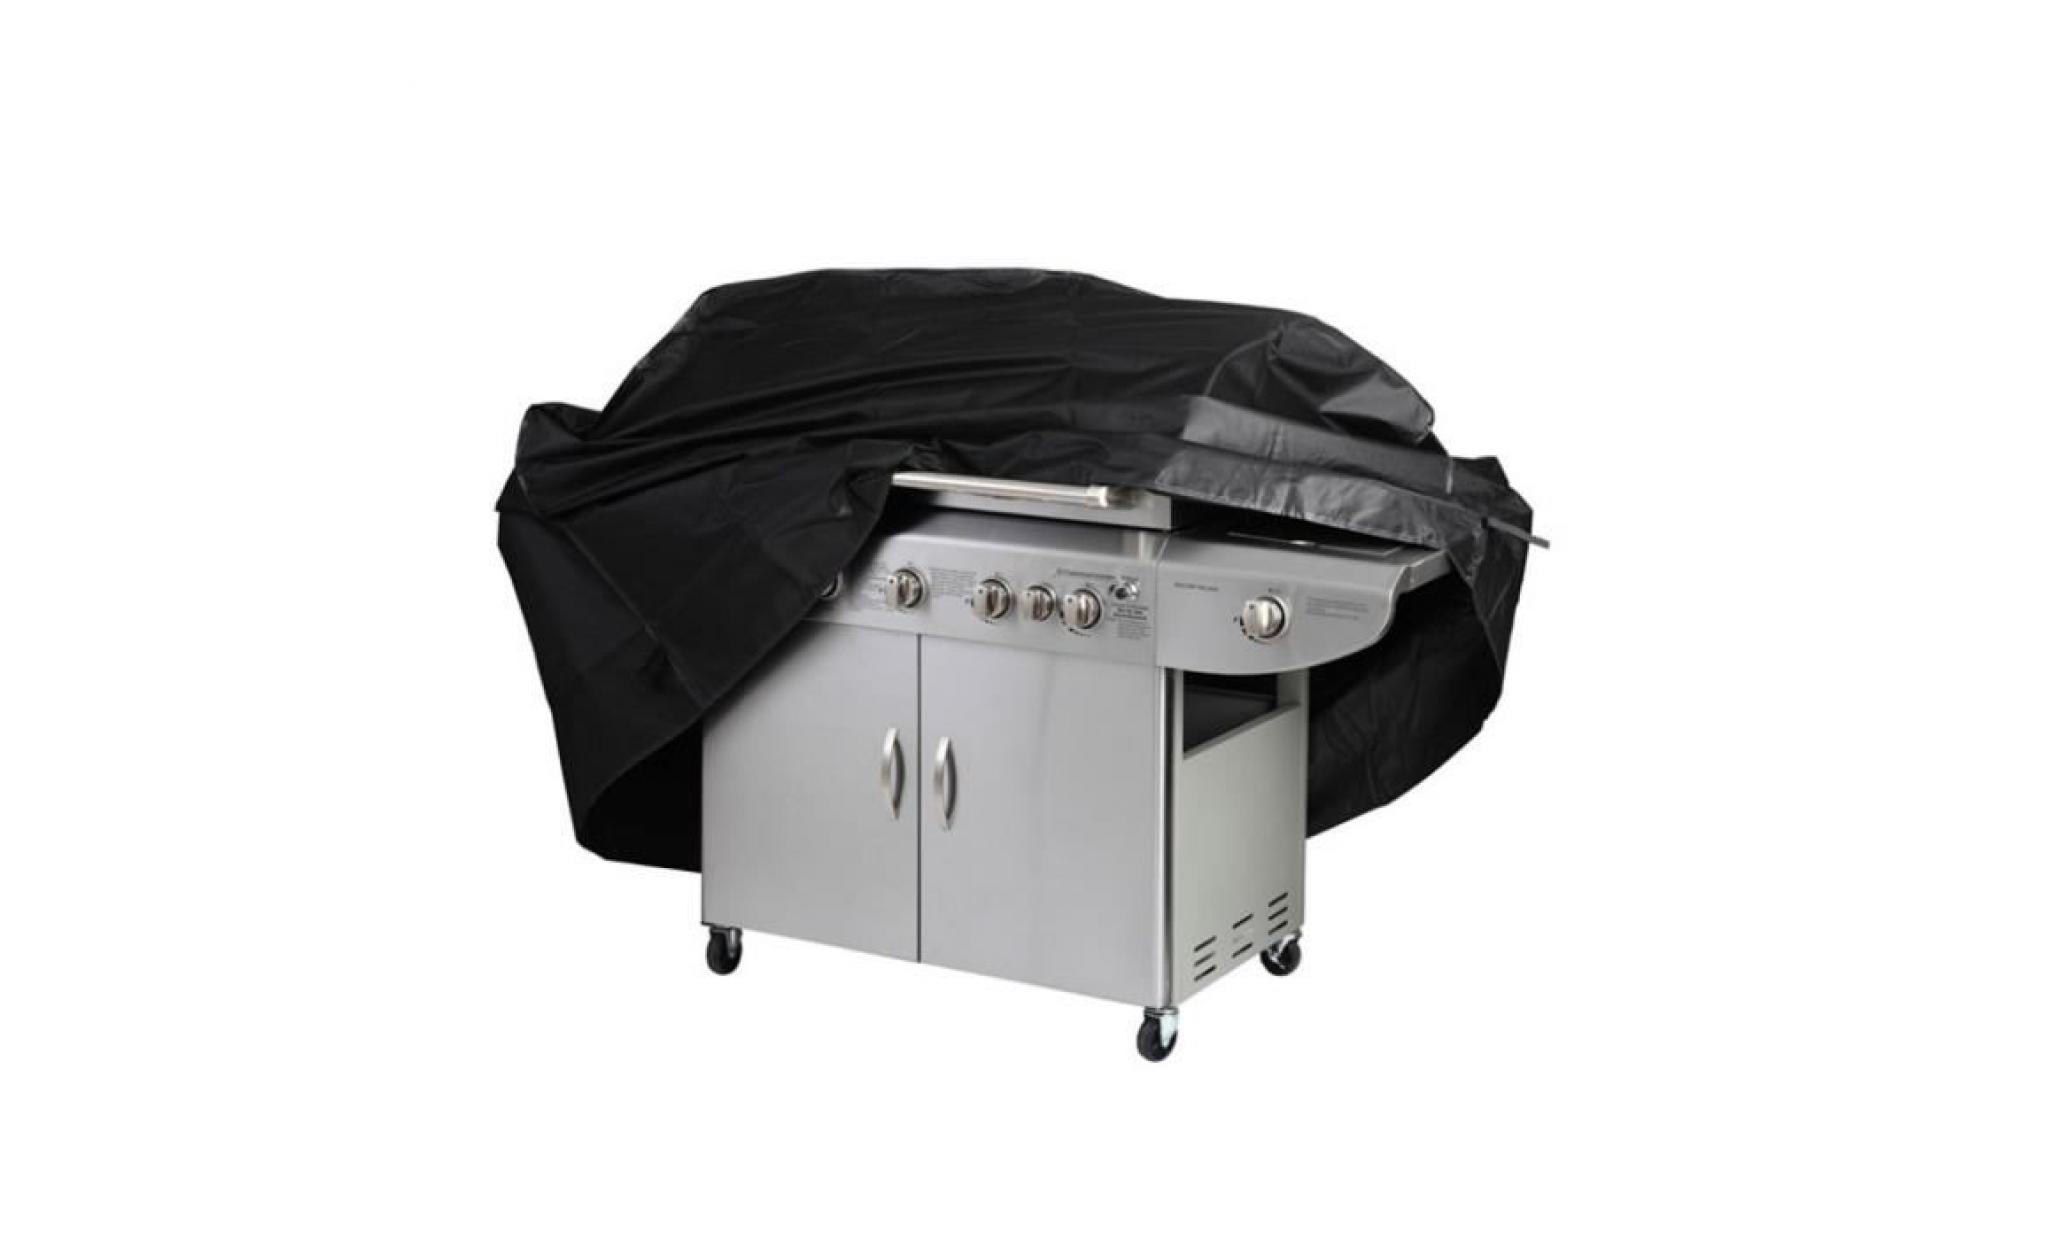 housse protège gril barbecue,couverture protection solaire waterproof pour le gril à l'extérieur,avec un cordon ajustable noire